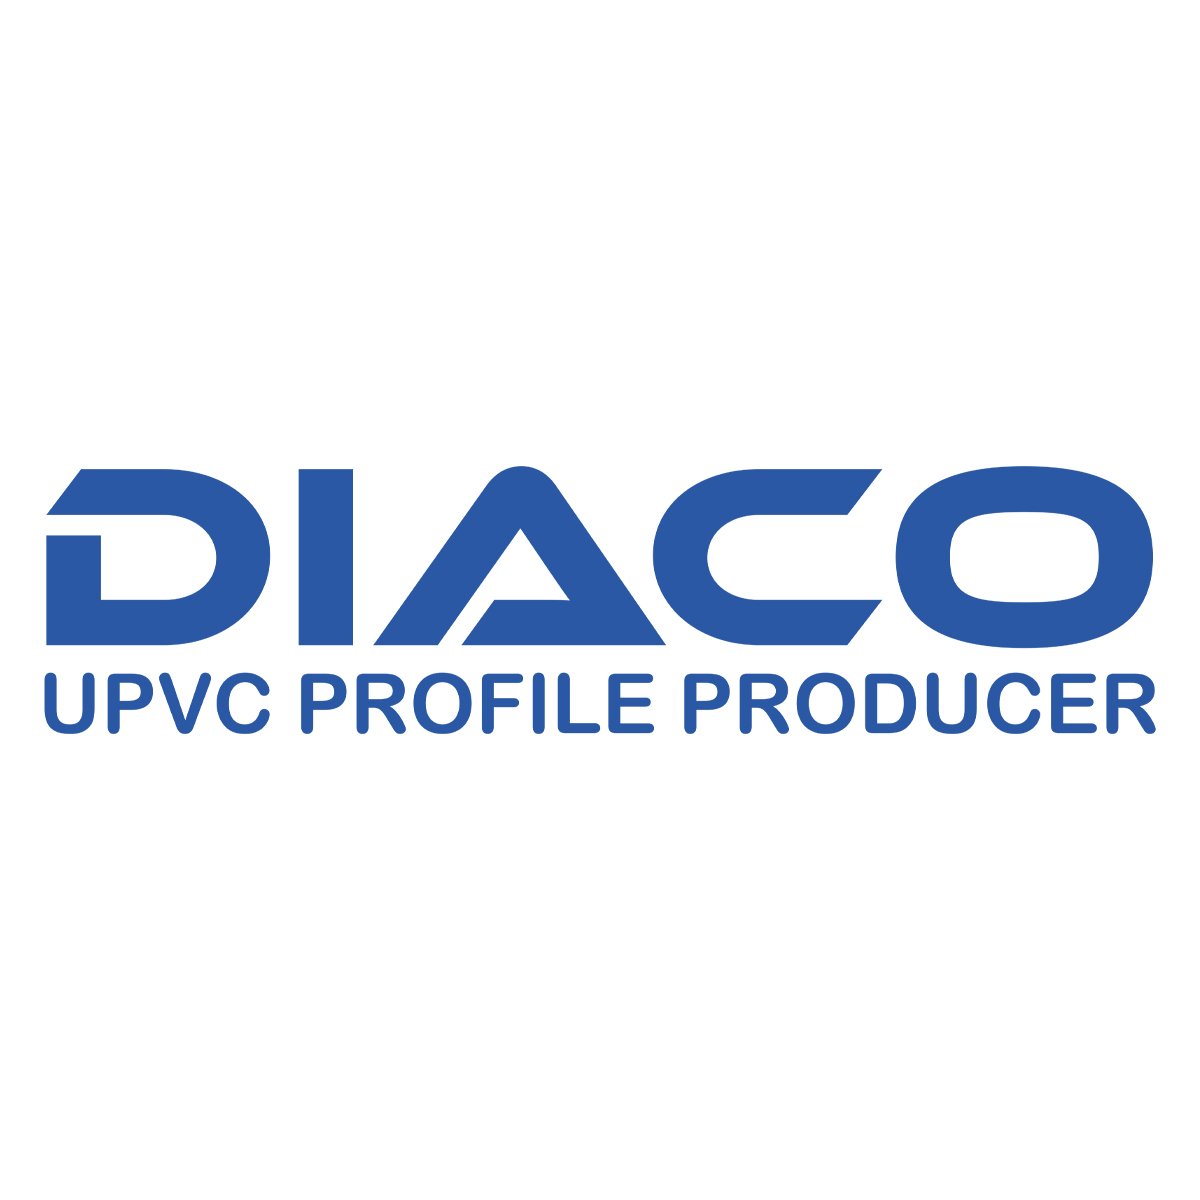 مهندس صنایع | Industrial Engineer - دیاکو پروفیل | Diaco Profile